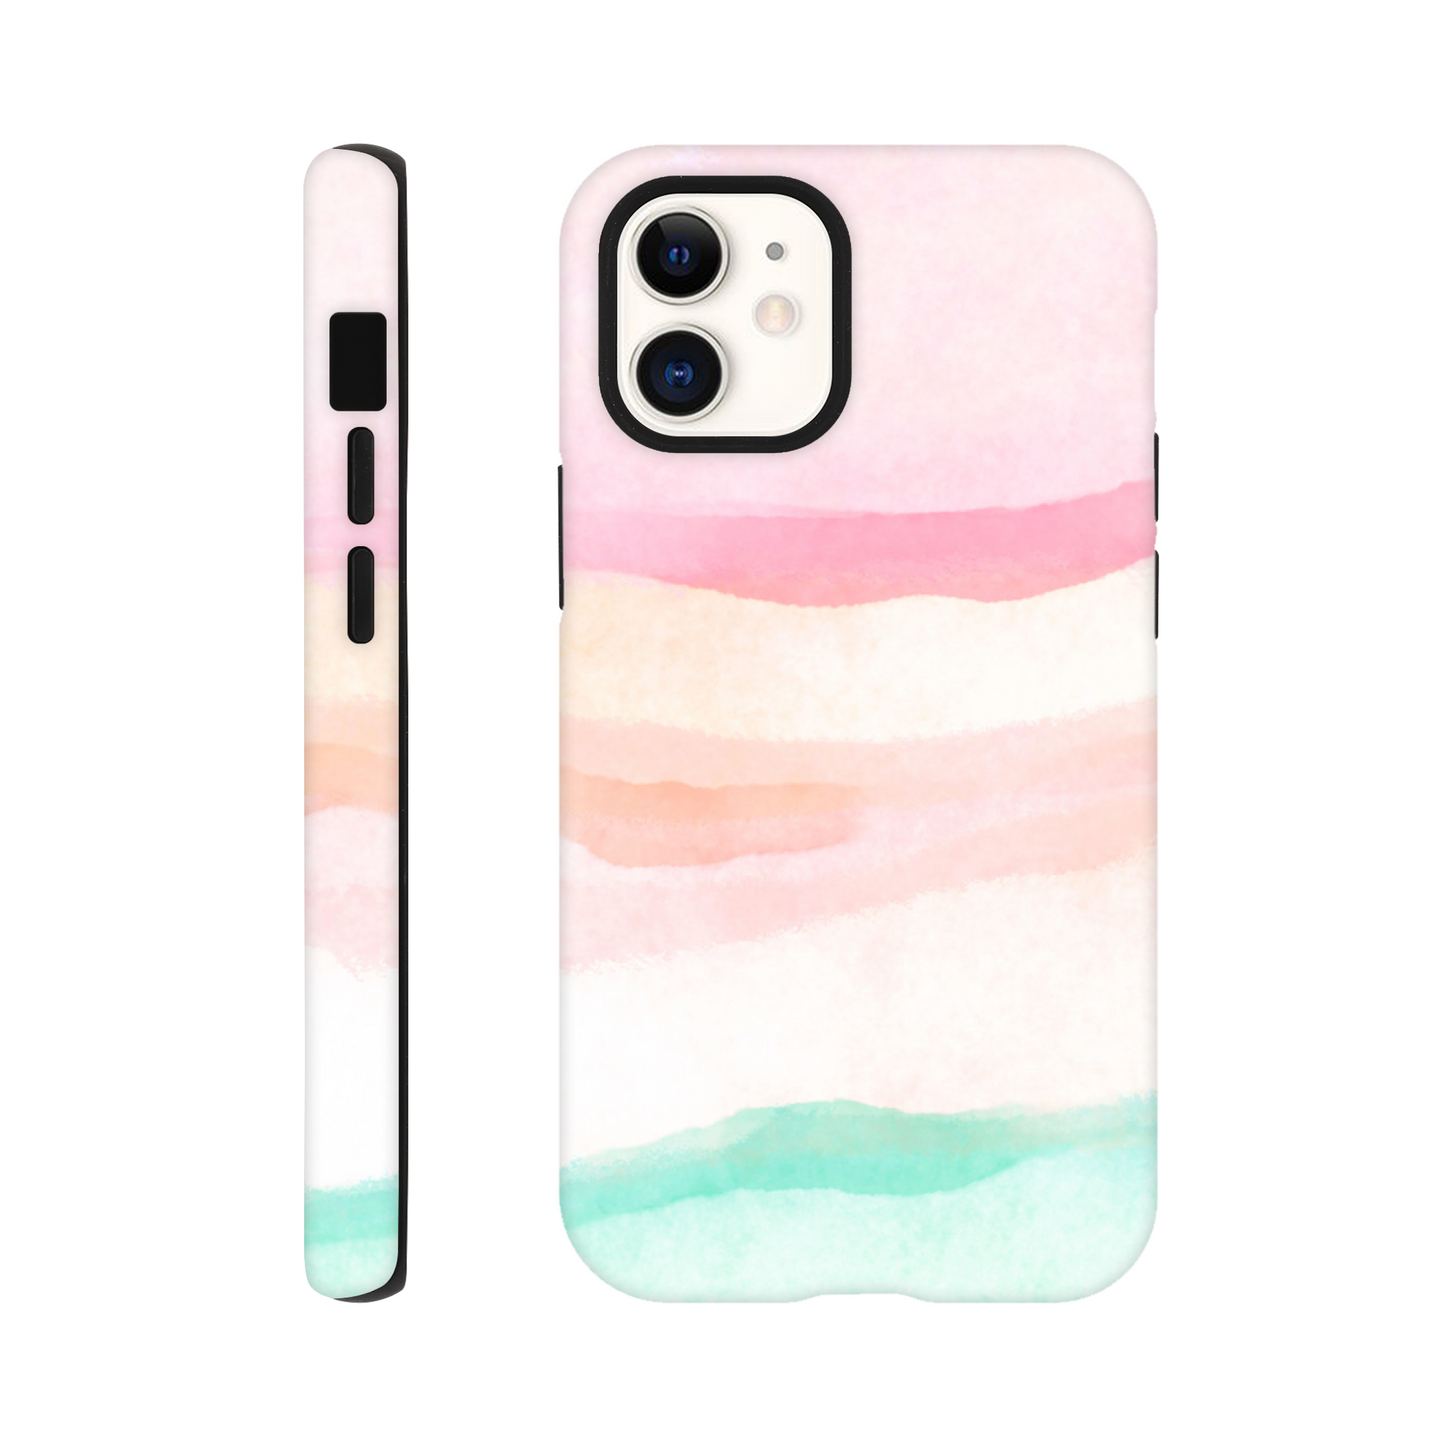 Pastels - Tough case iPhone 12 Mini Phone Case